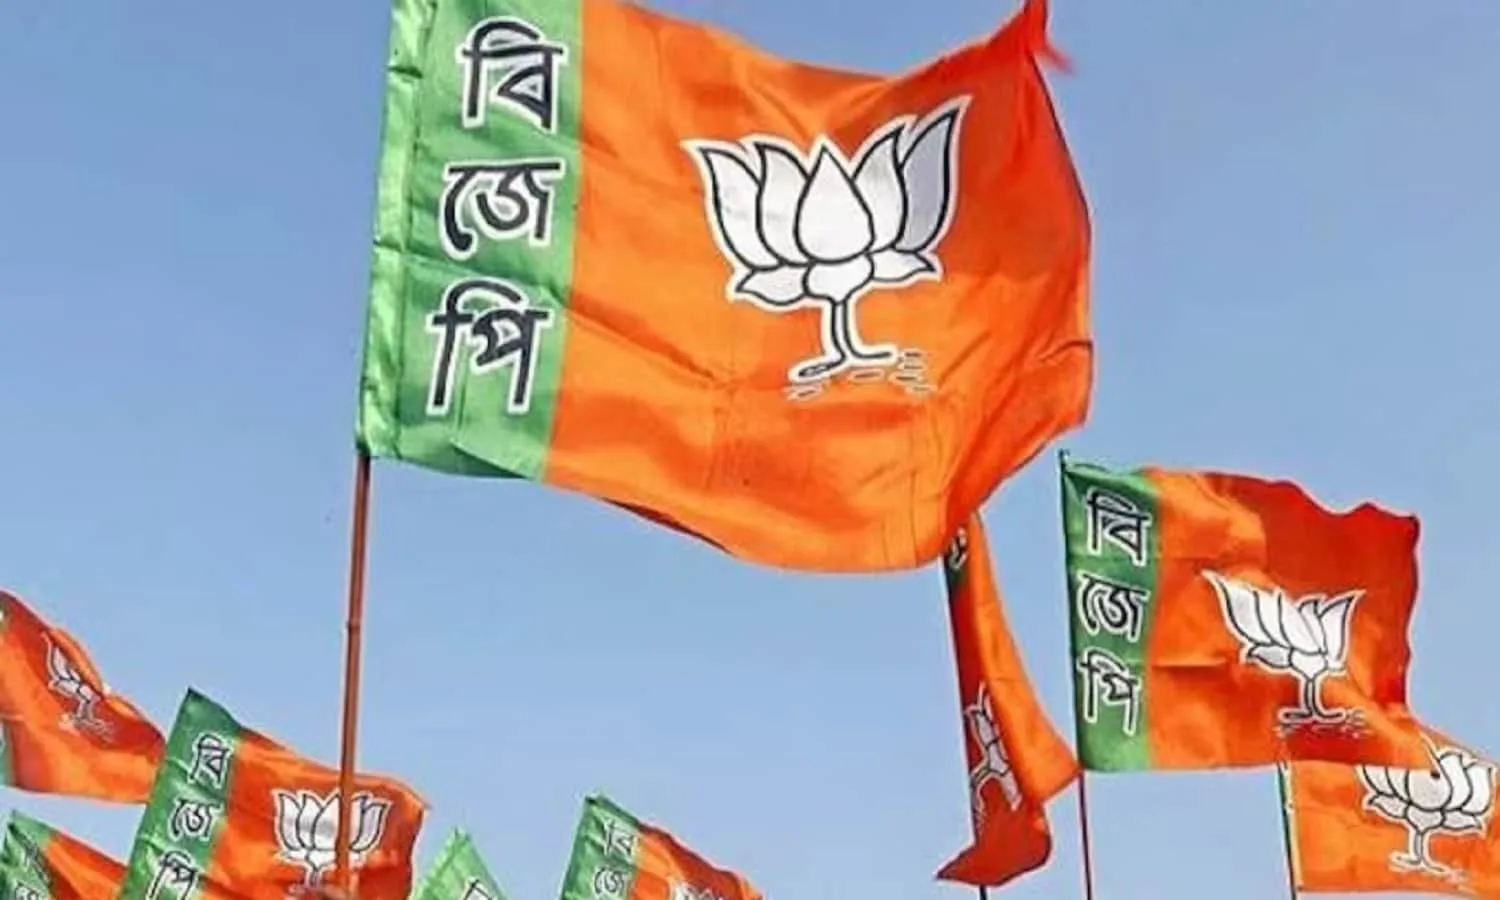 Bengal BJP